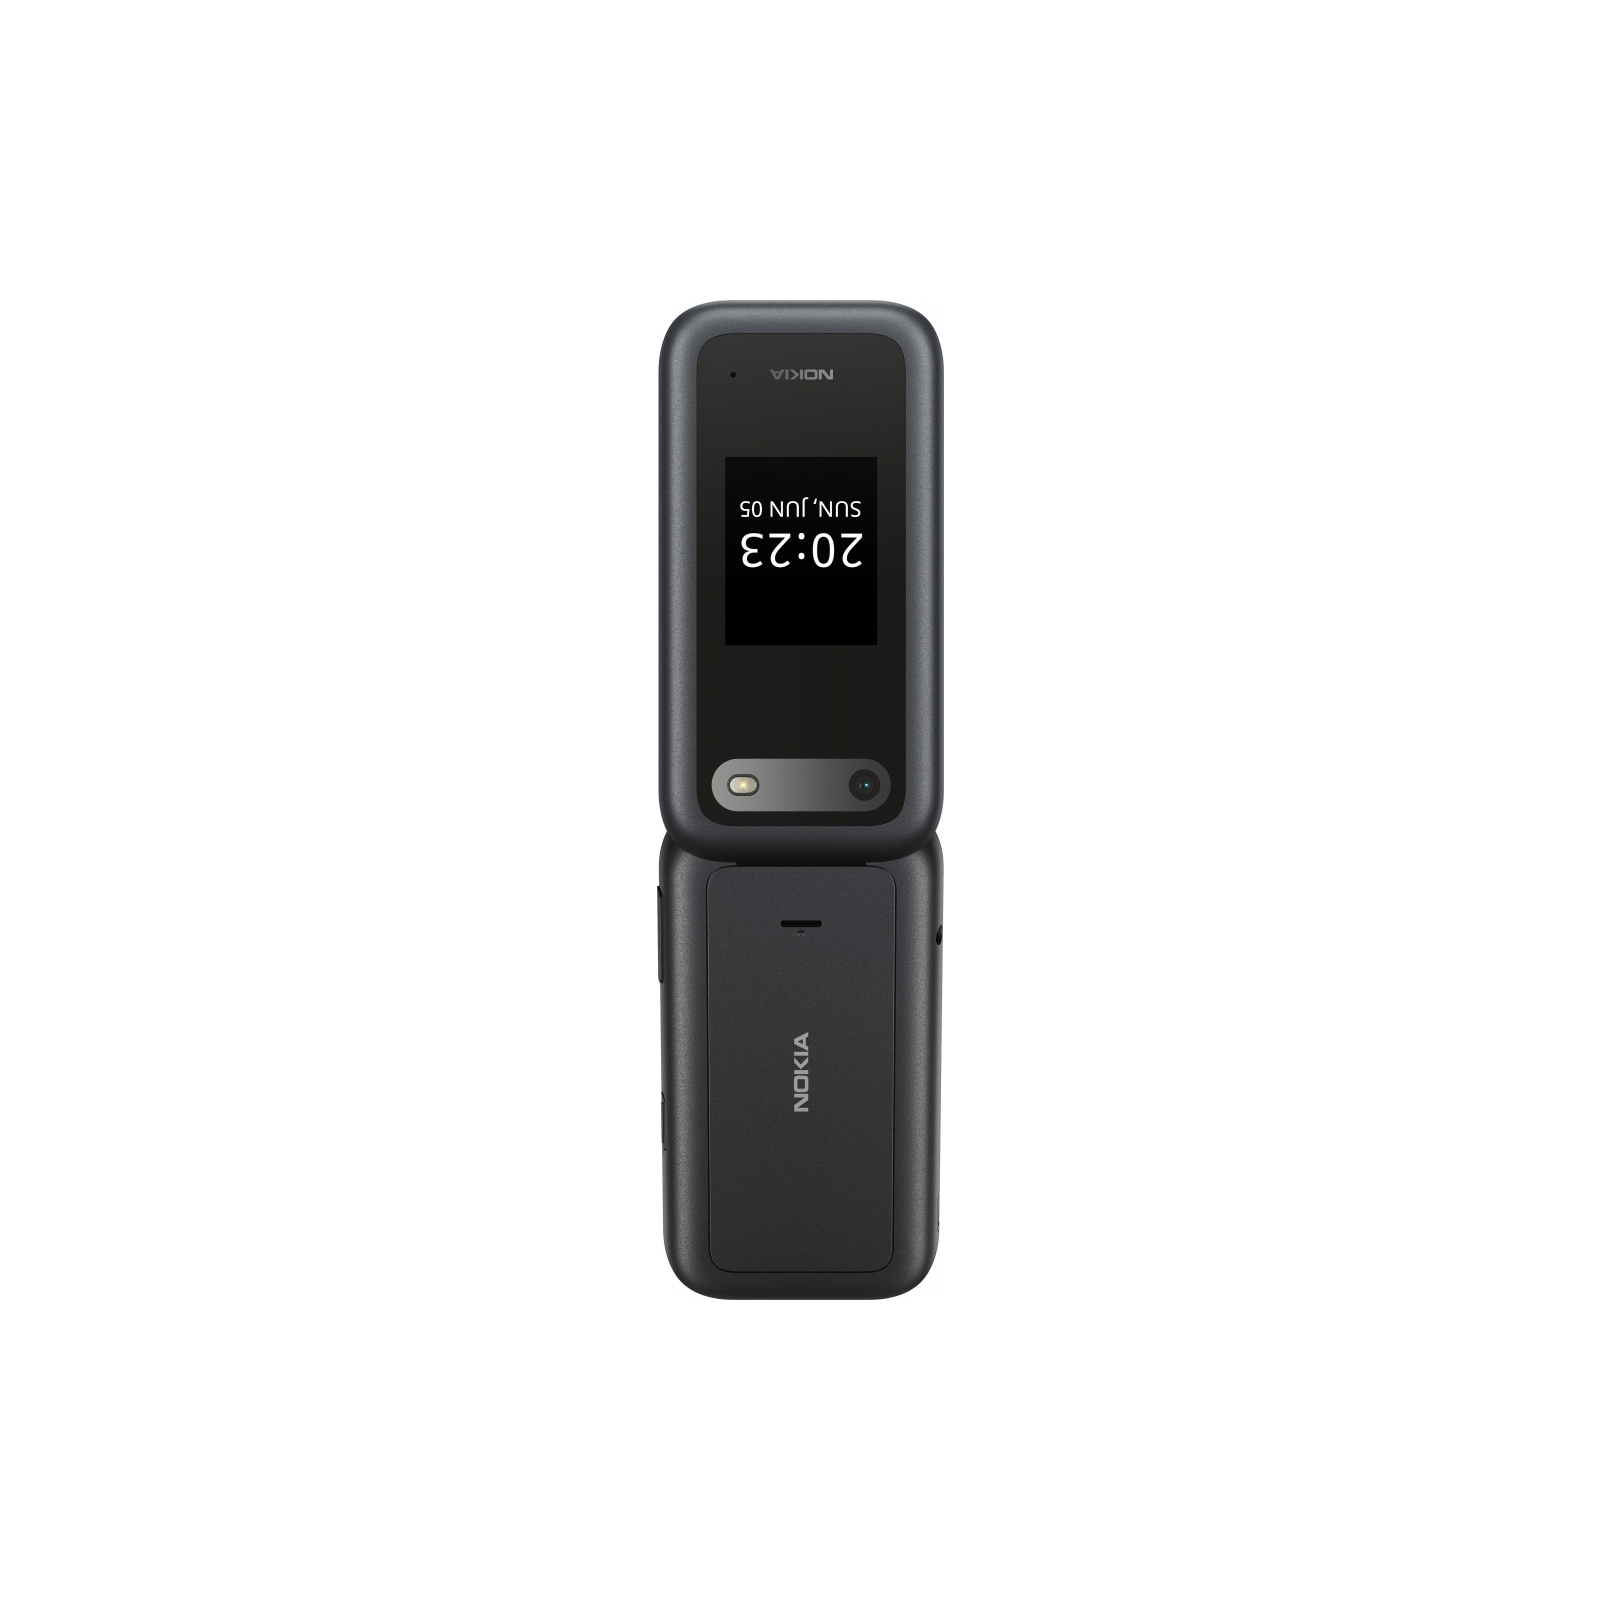 Мобильный телефон Nokia 2660 Flip Black изображение 3